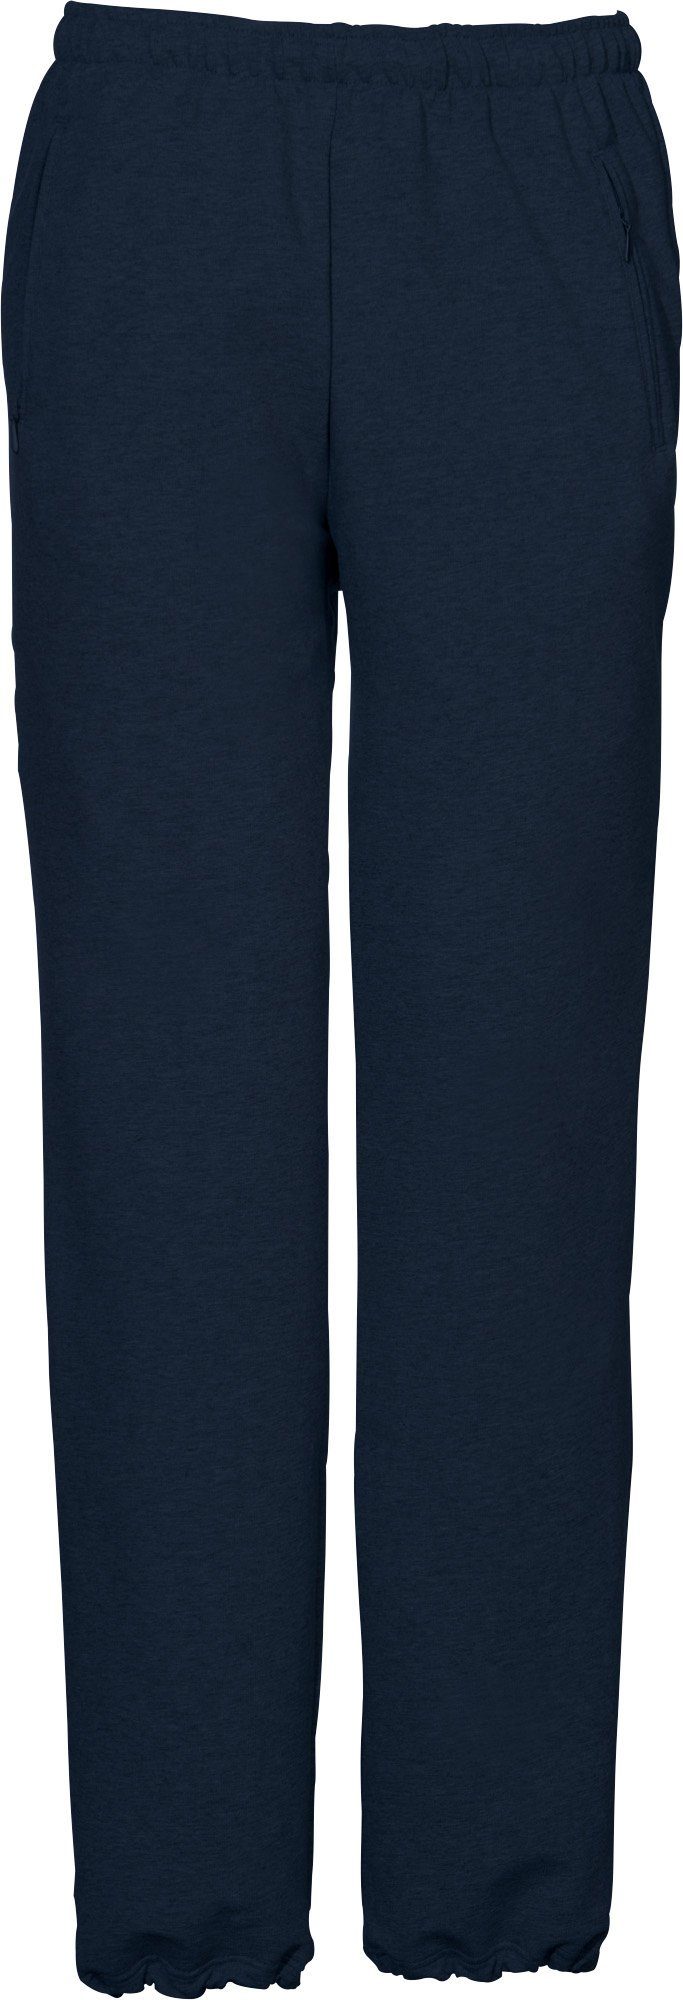 SCHNEIDER Sportswear Jogginghose Herren-Freizeithose "HORGENM", dunkelblau lang Uni